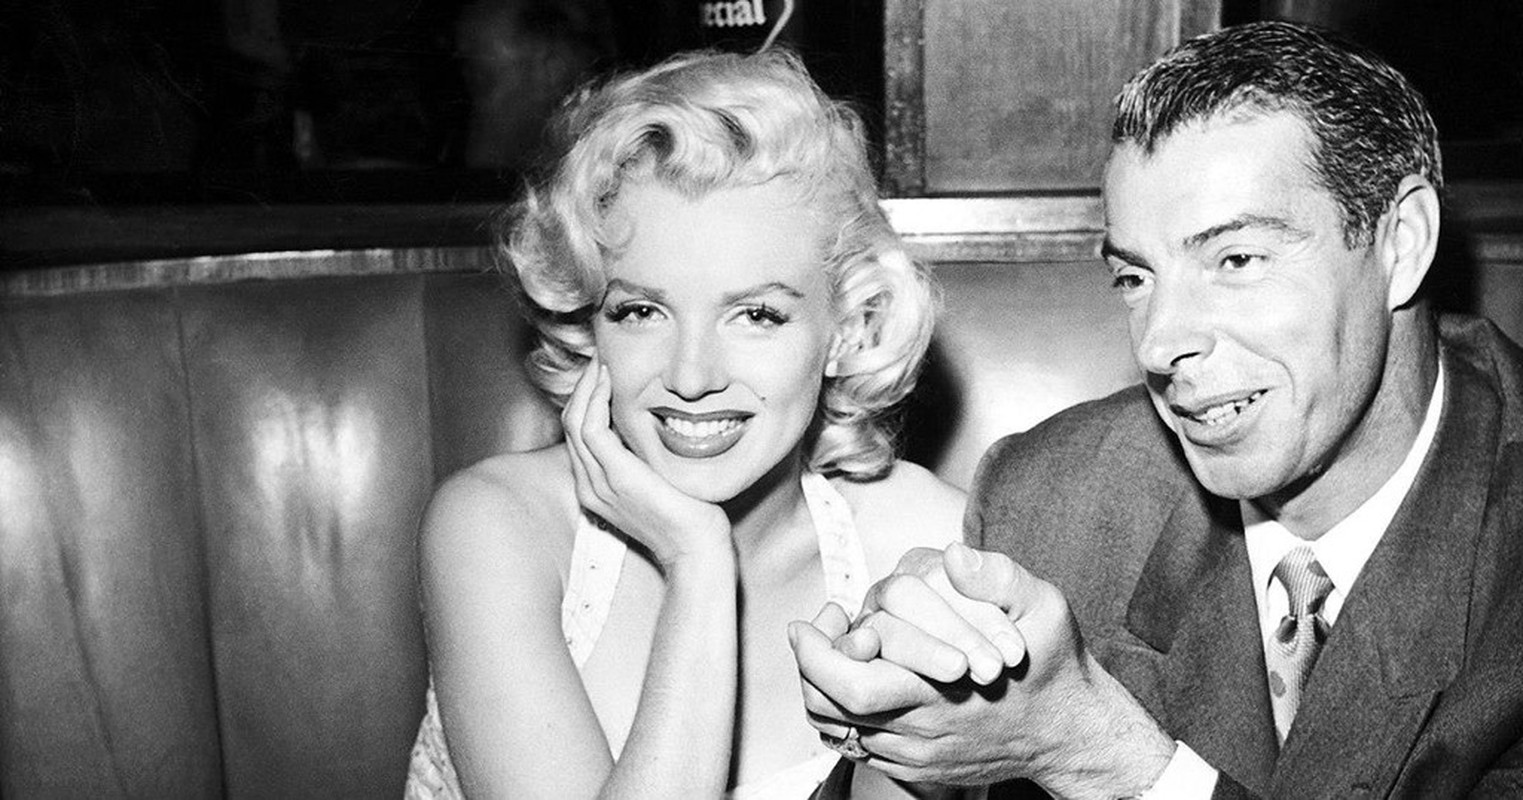 Co gi ben trong biet thu Marilyn Monroe tung sinh song?